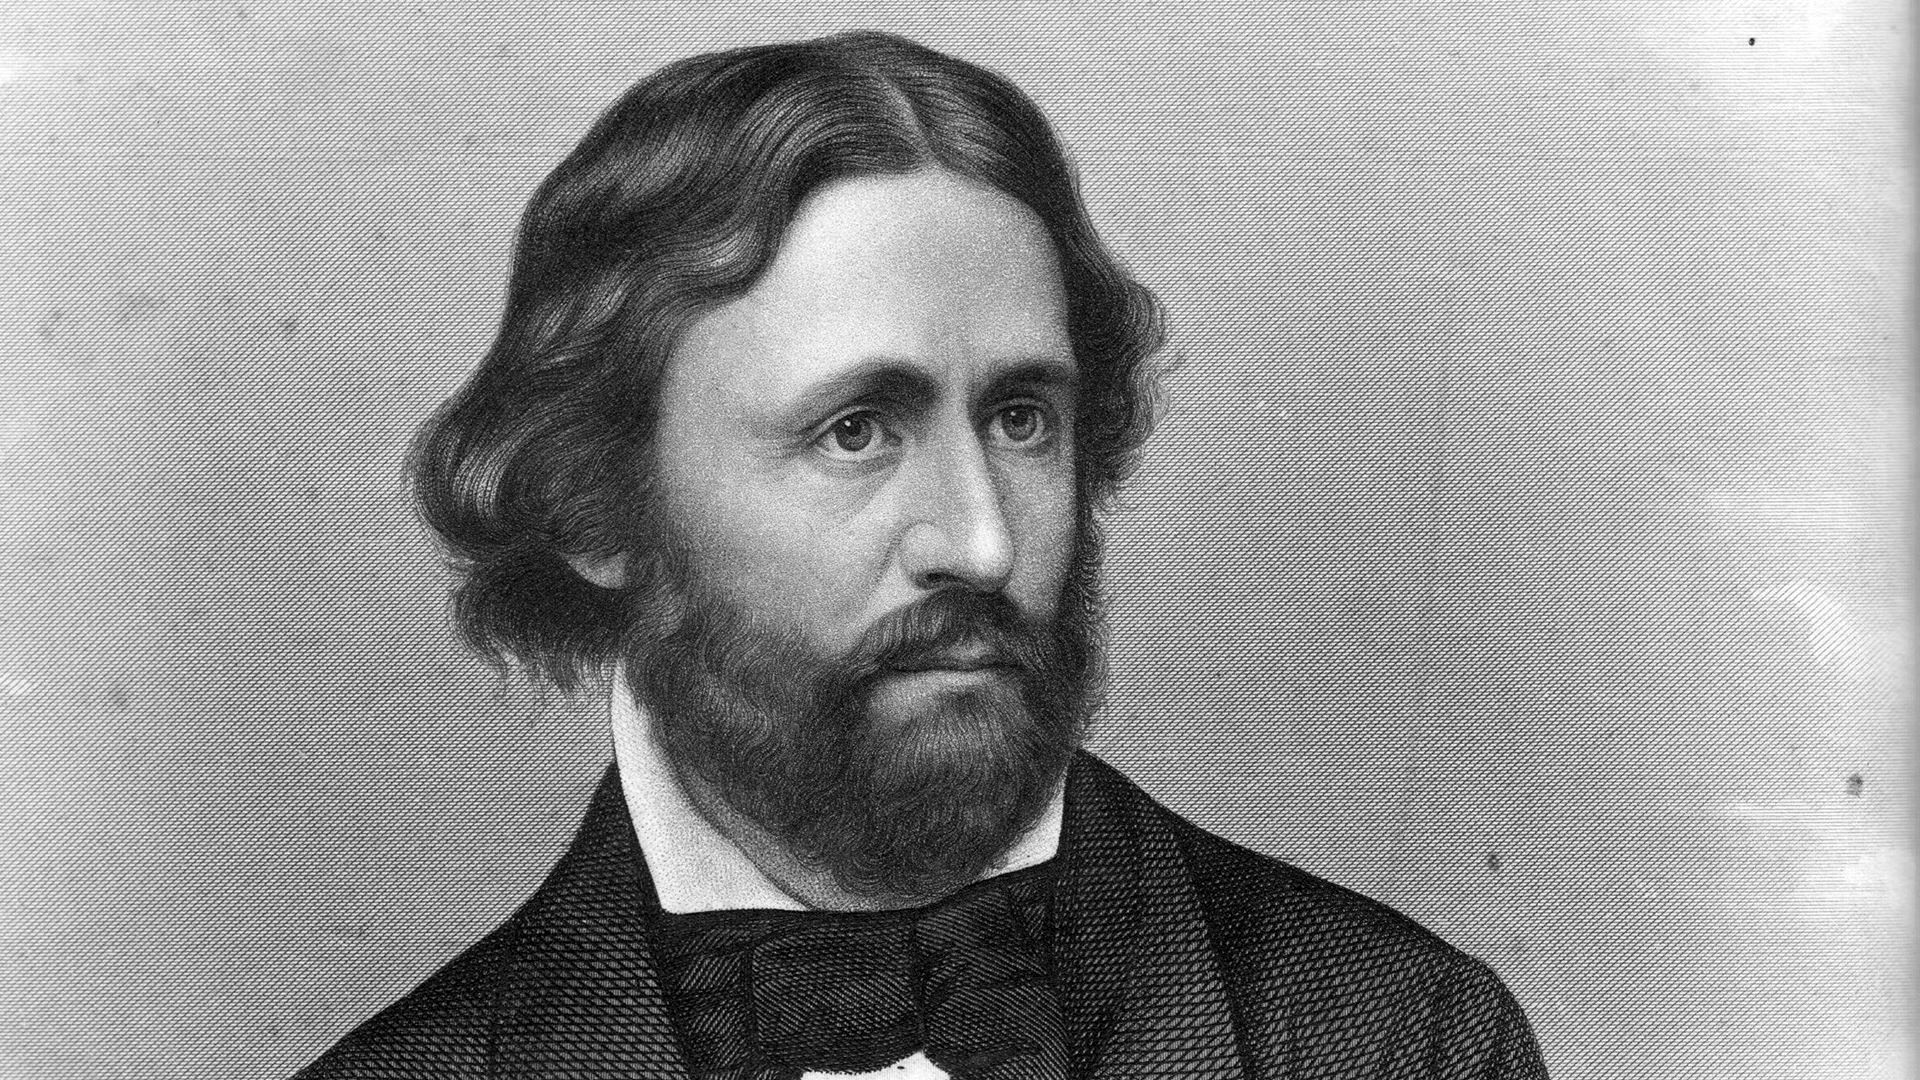 John C. Fremont - Litografi af foto fra 1856 af Mathew Brady